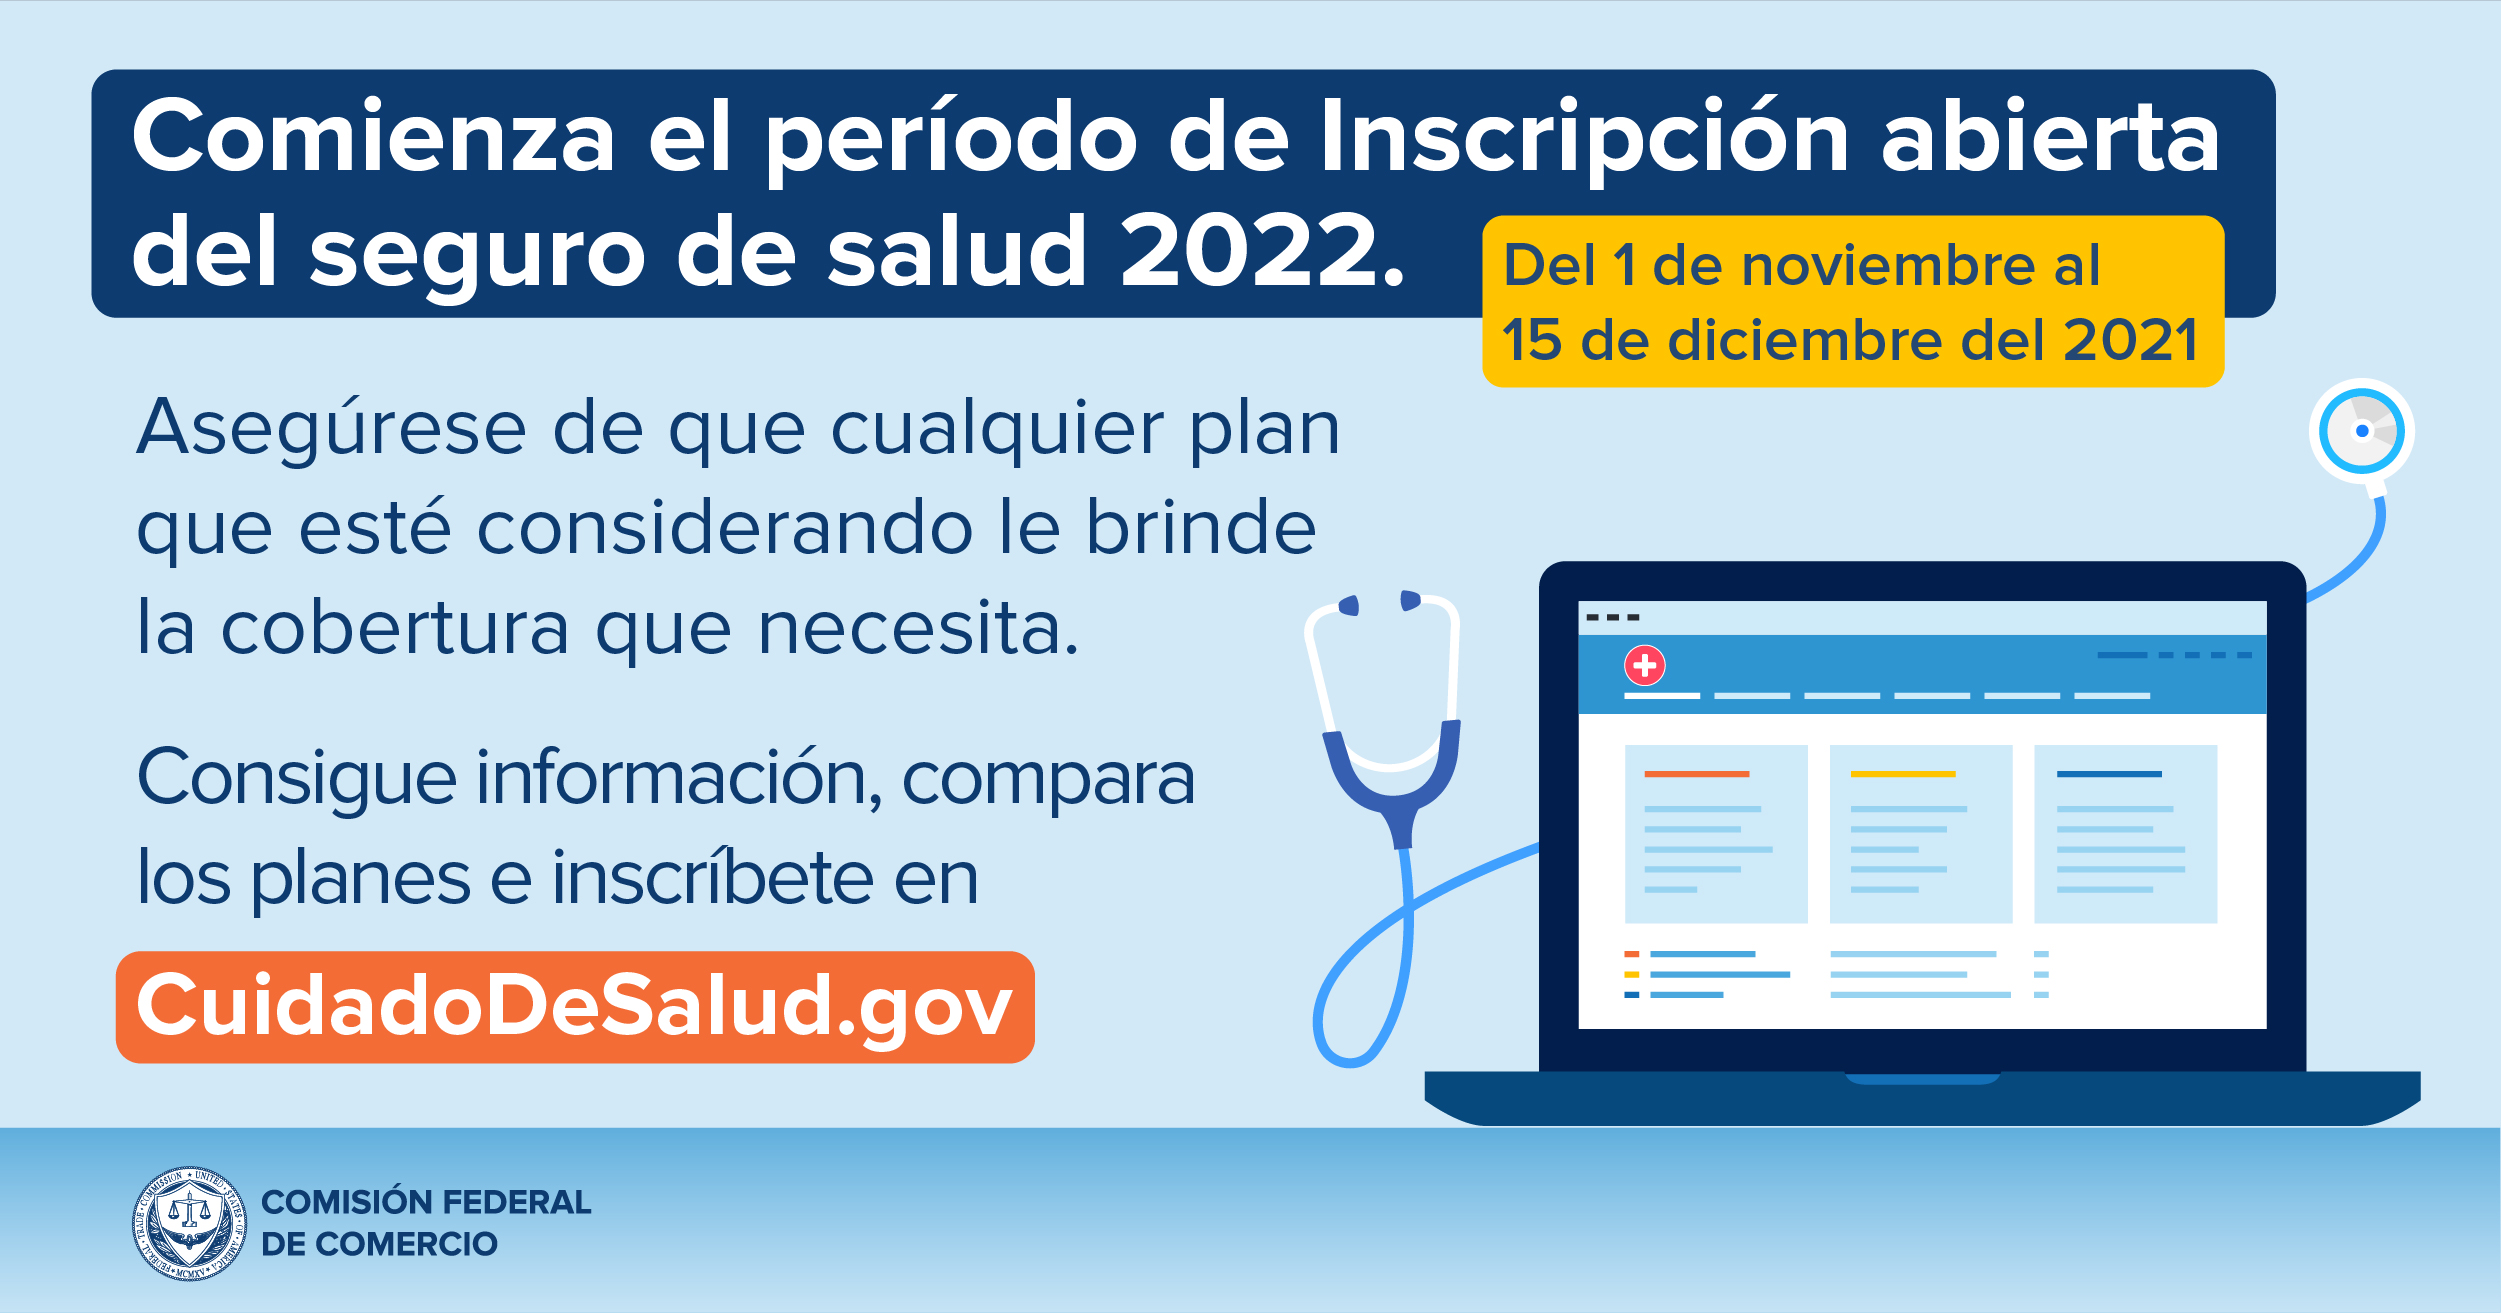 Comienza el periodo de inscripcion abuerta del seguro de salud 2022. Consigue info, compara los planes e inscribete en cuidadodesalud.gov